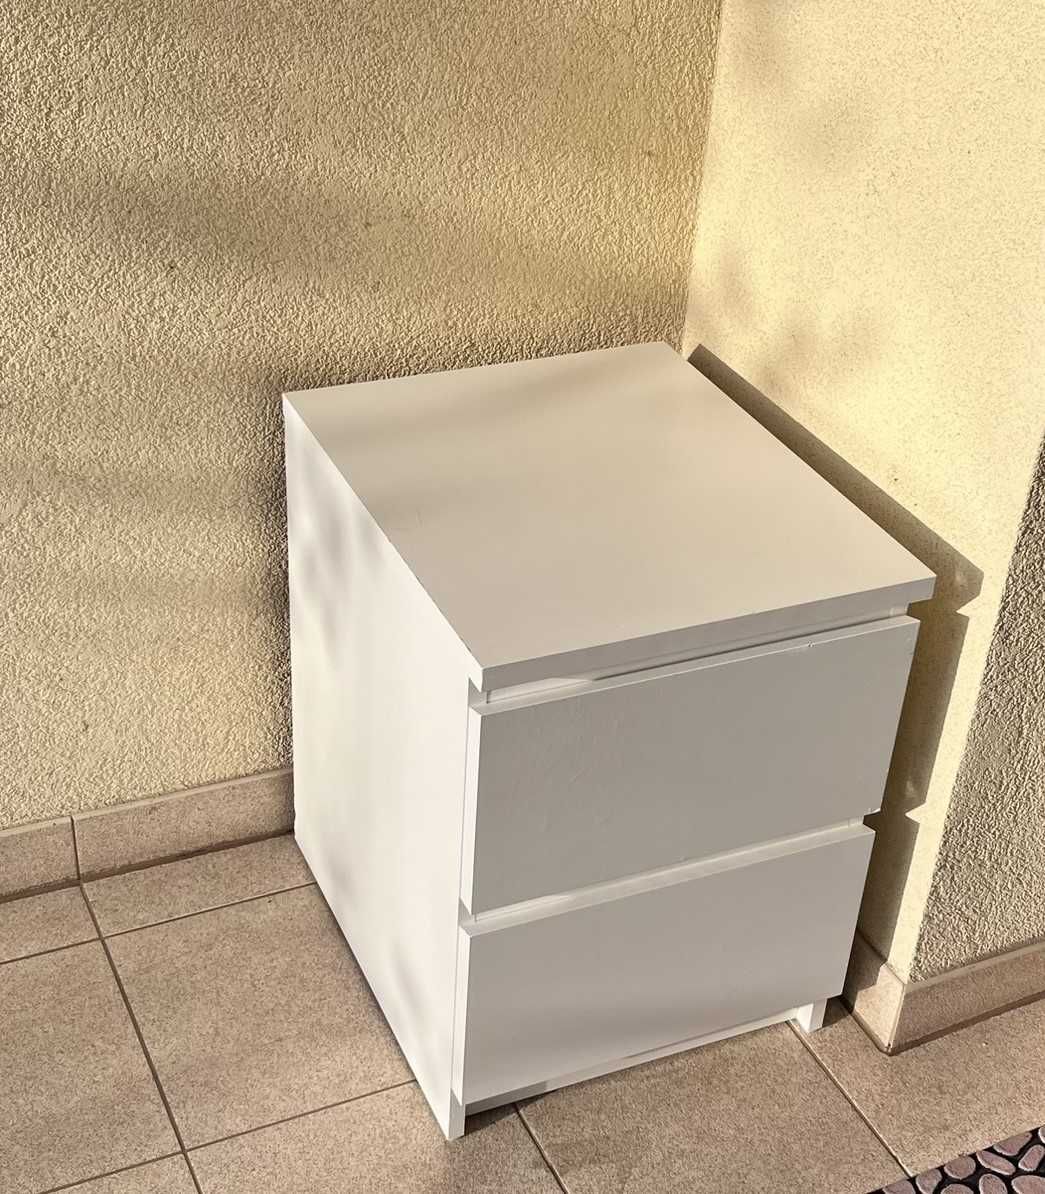 Komoda Ikea, MALM, 2 szuflady, biała, 40x55 cm